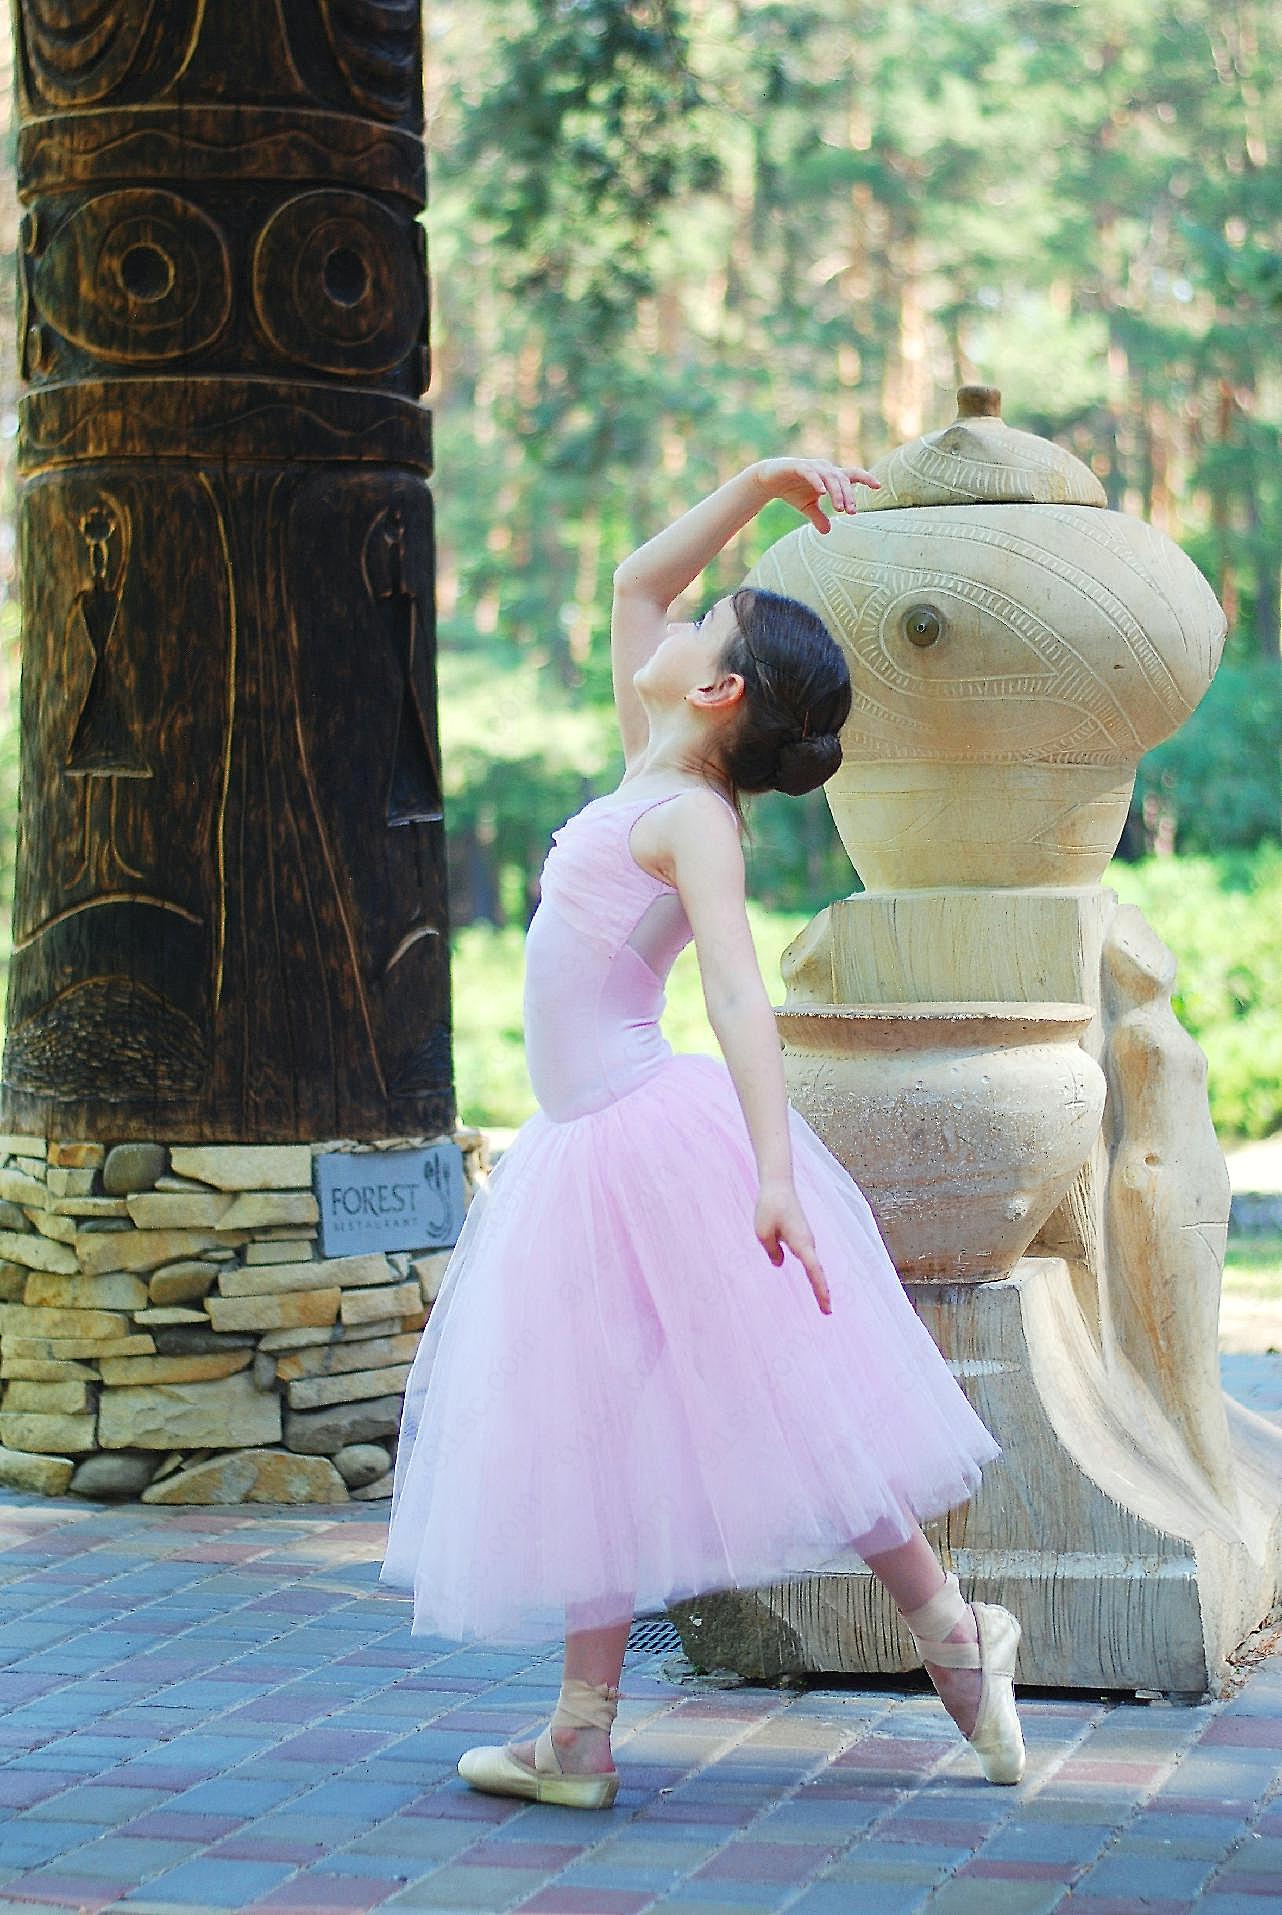 跳芭蕾舞的小女孩图片人物